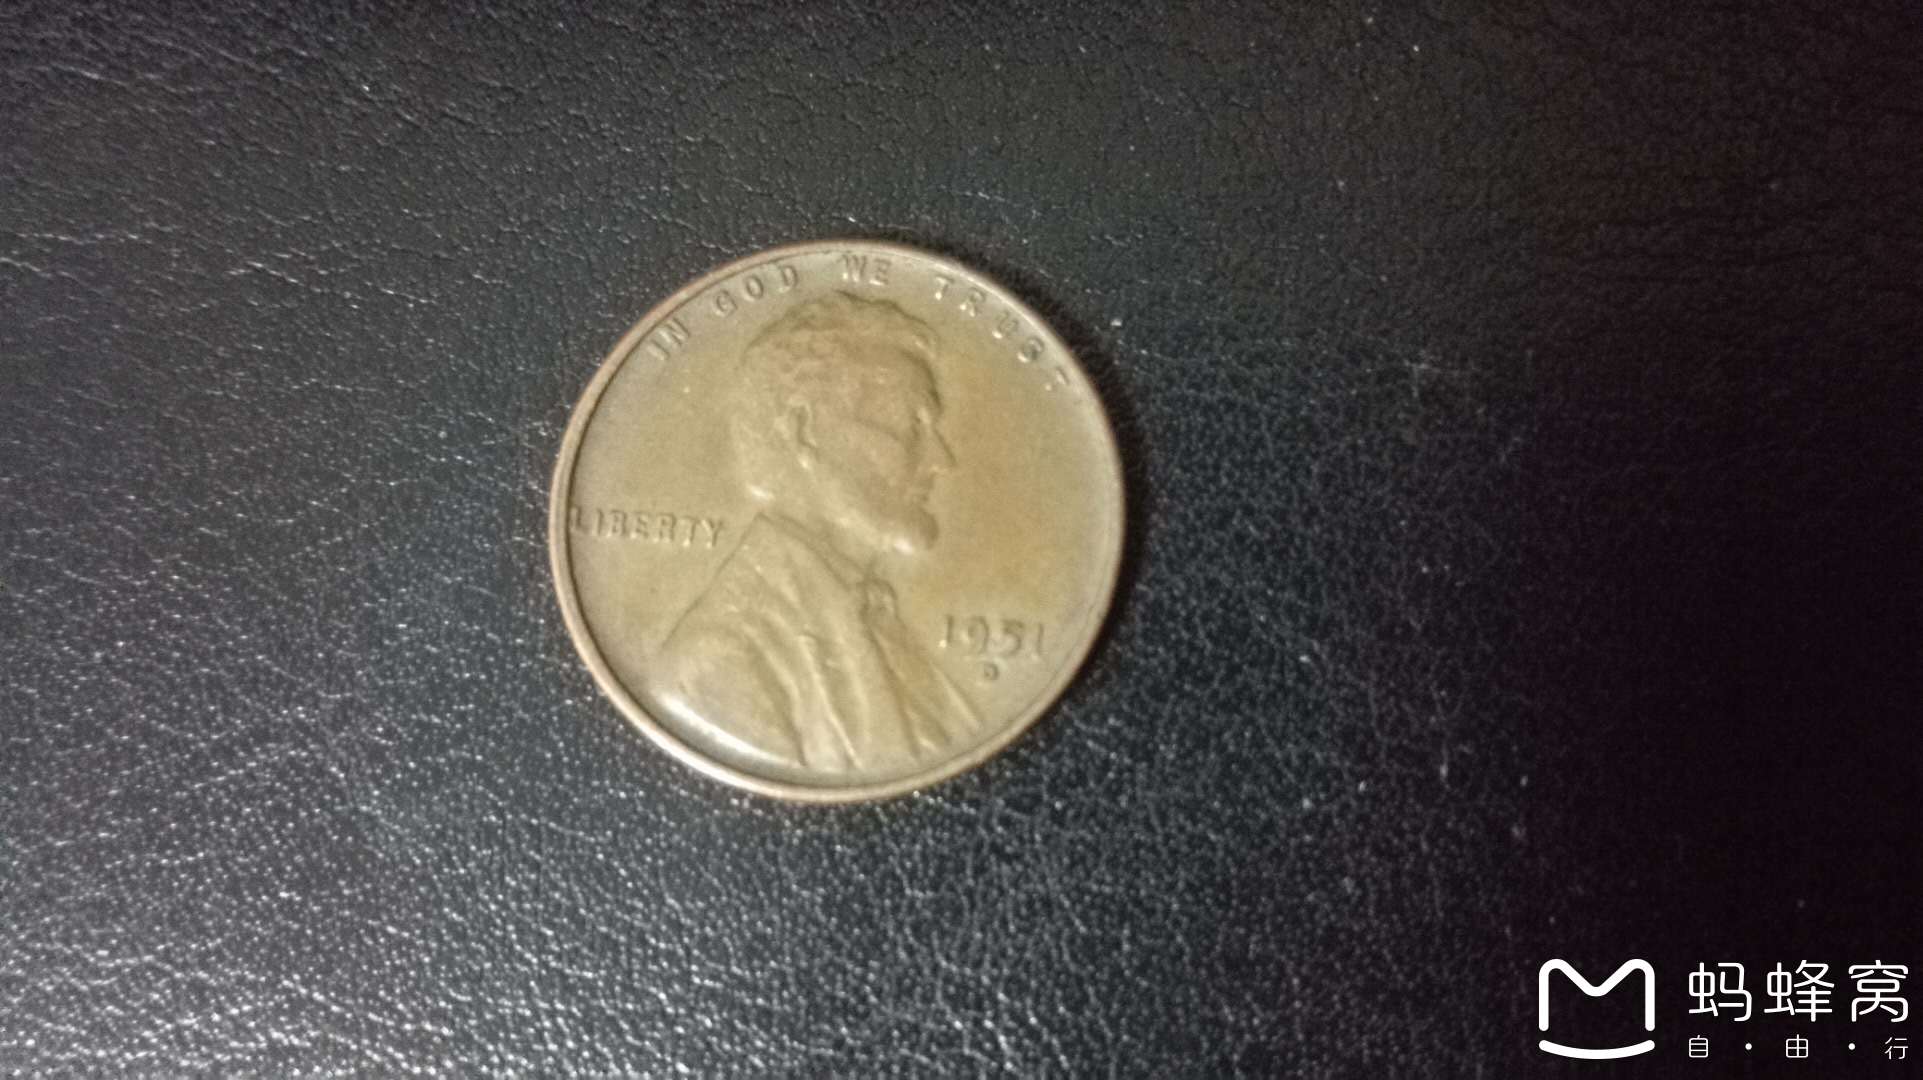 1美分的硬币在美帝叫penny,是从1909年纪念林肯诞生100周年开始发行的